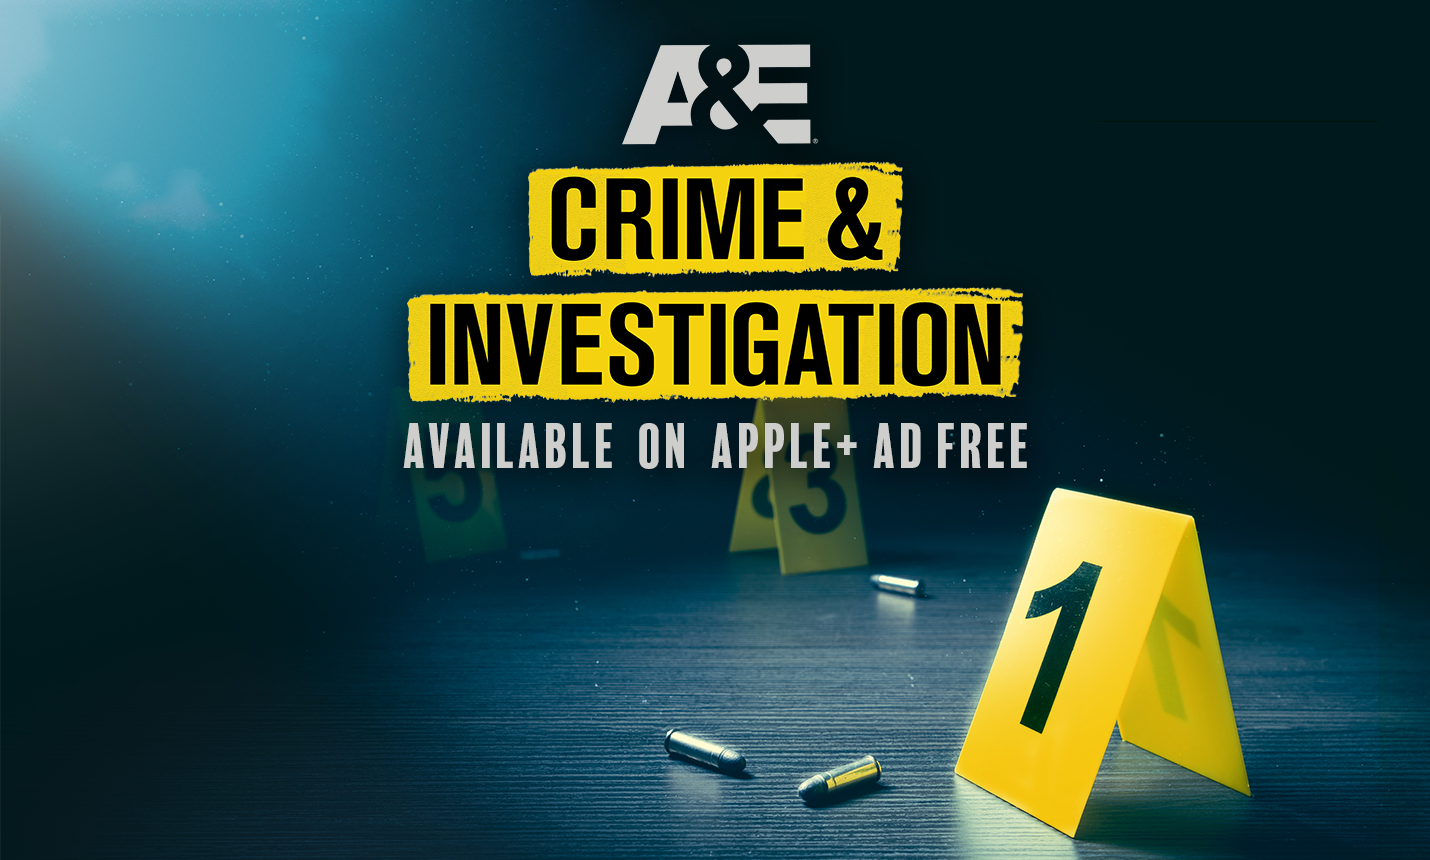 A&E Crime and Investigation